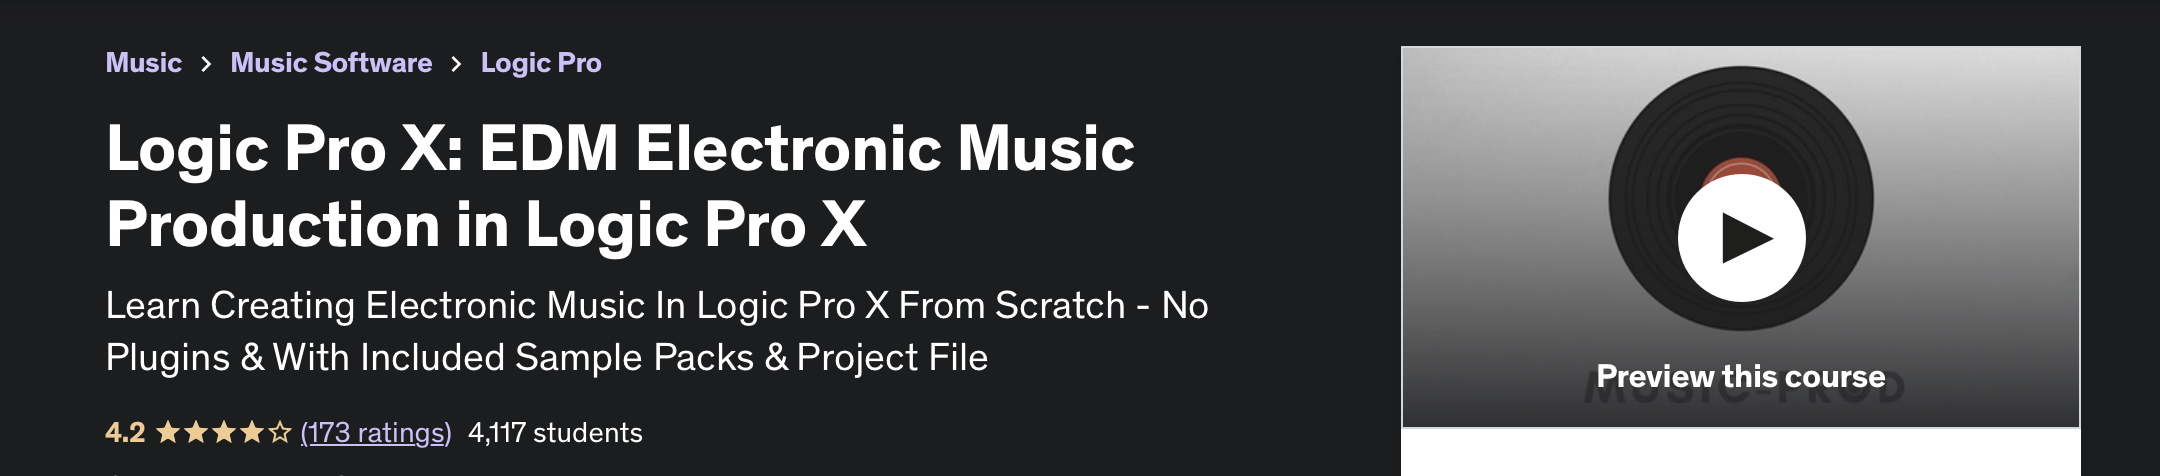 Logic Pro X EDM Electronic Music Production in Logic Pro X